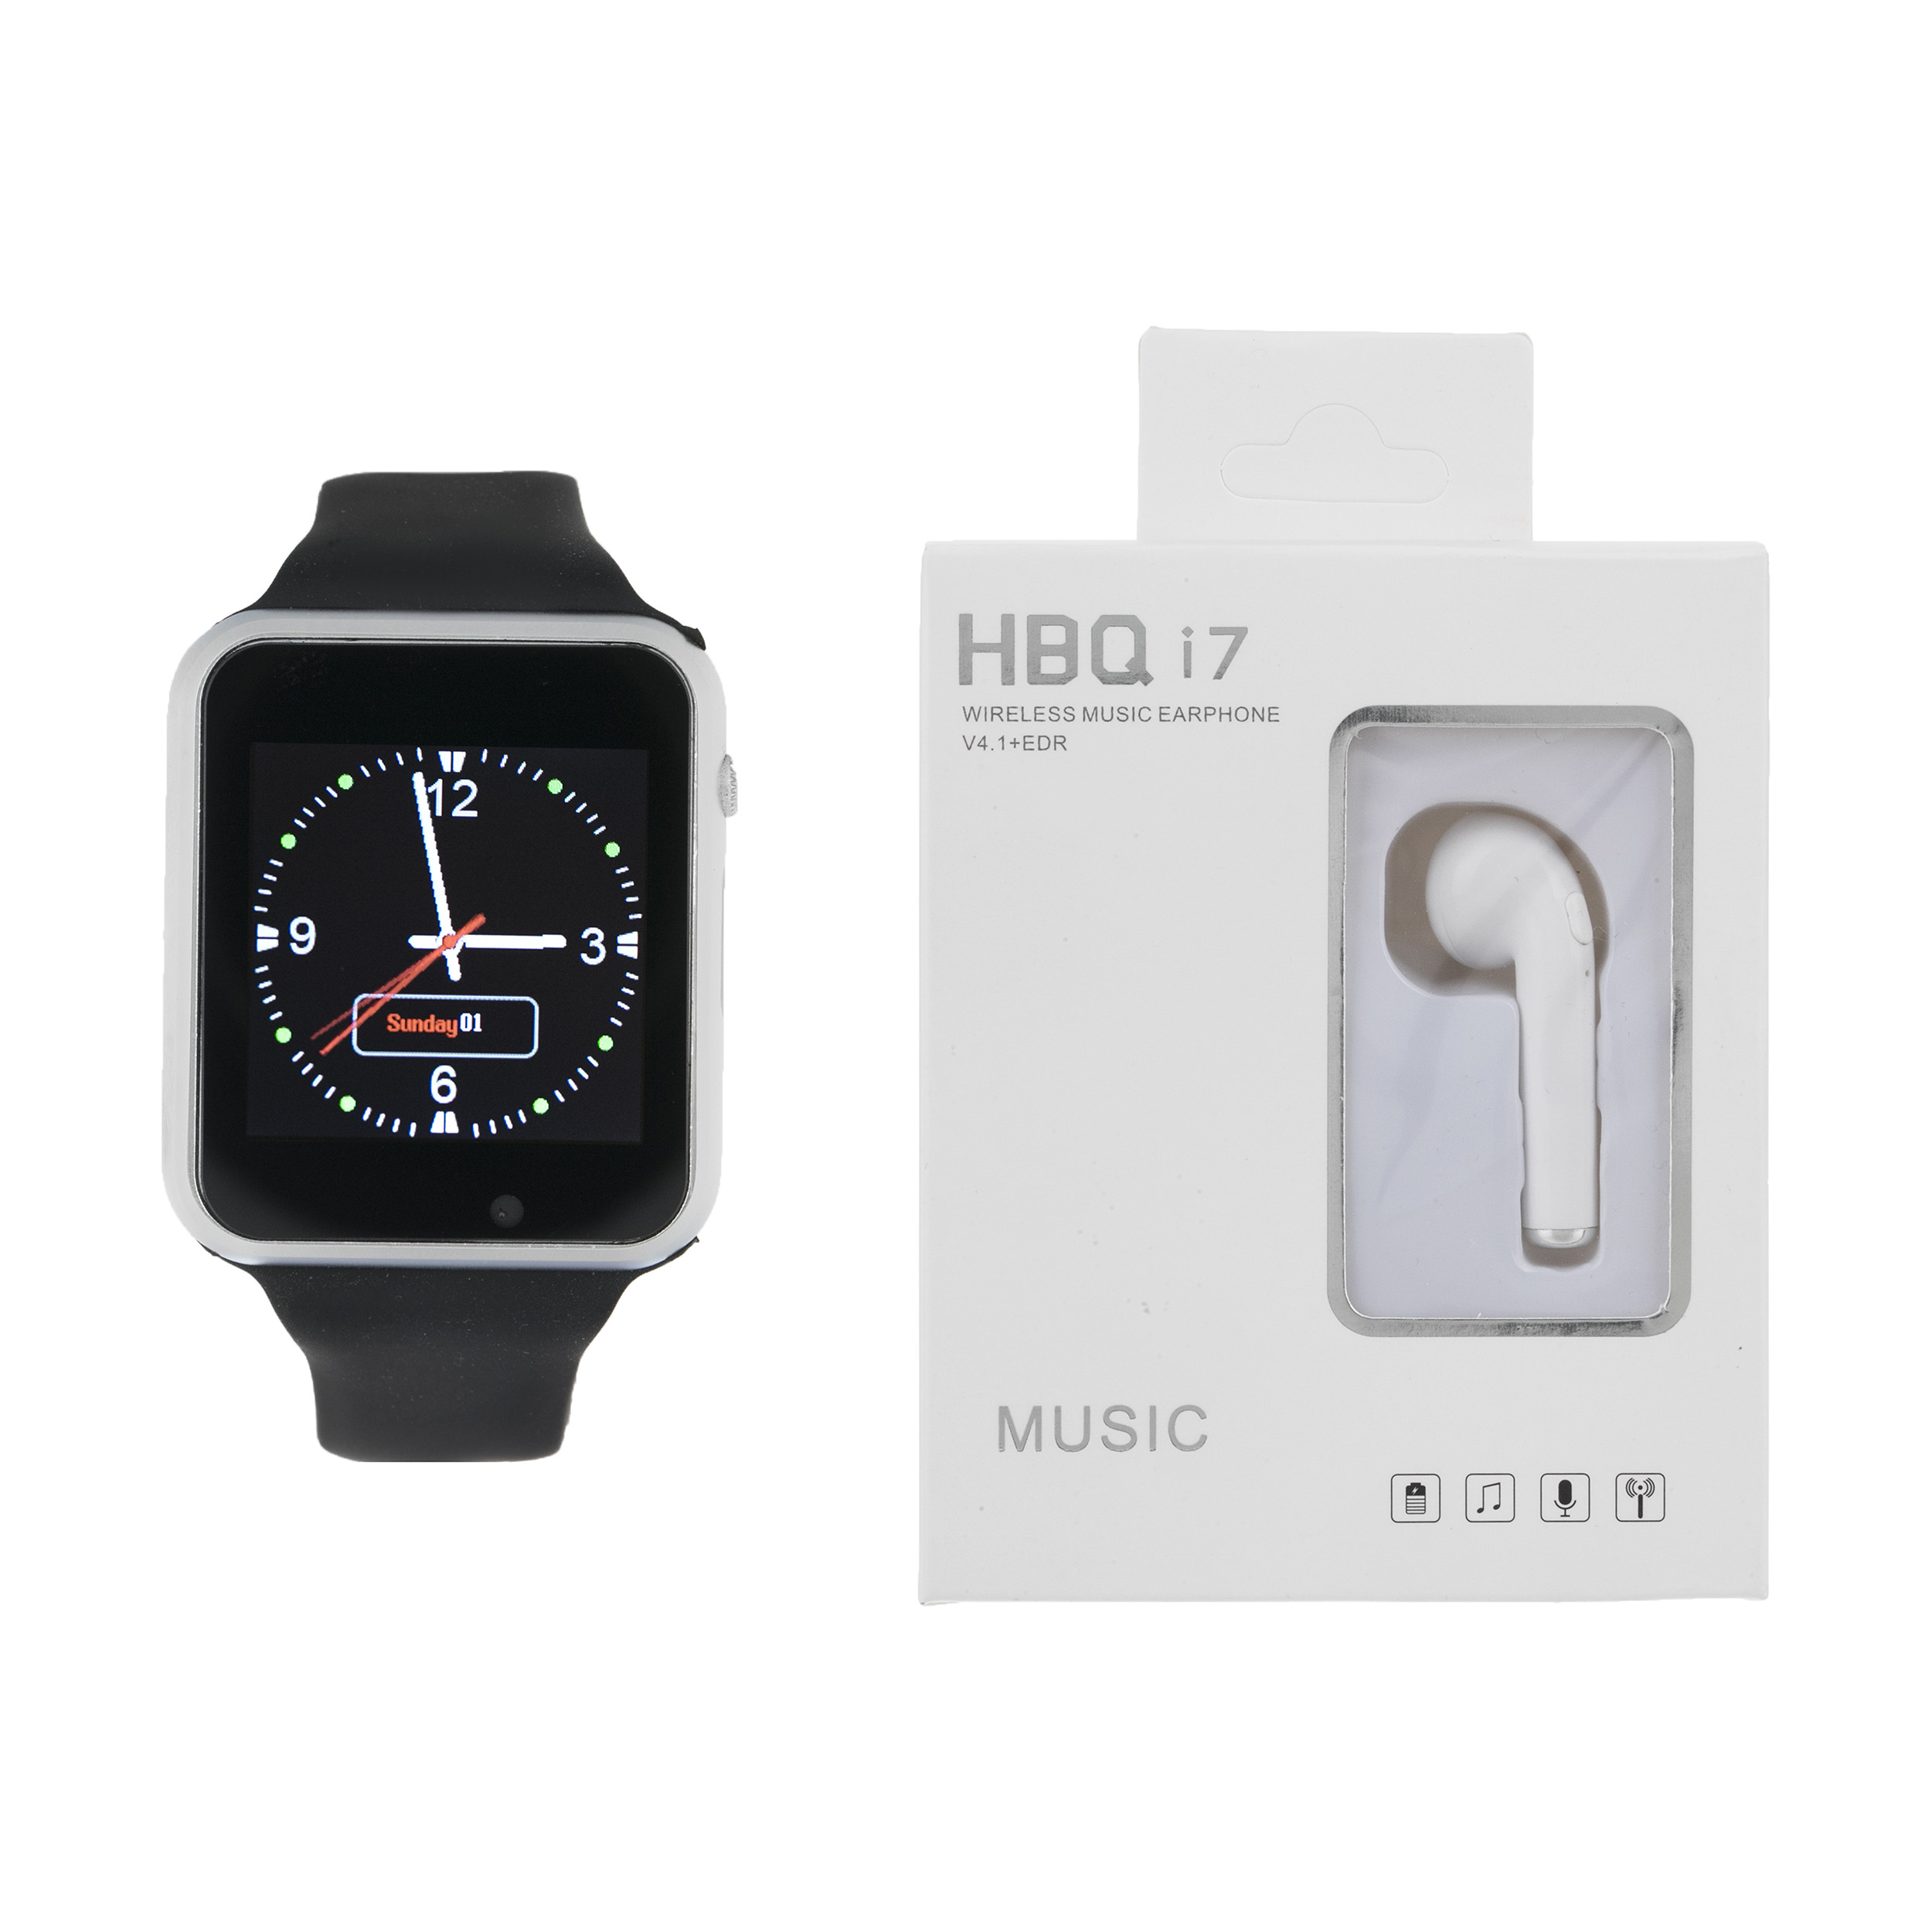 ساعت هوشمند جی-تب مدل W101 Hero به همراه هندزفری اچ بی کیو مدل i7